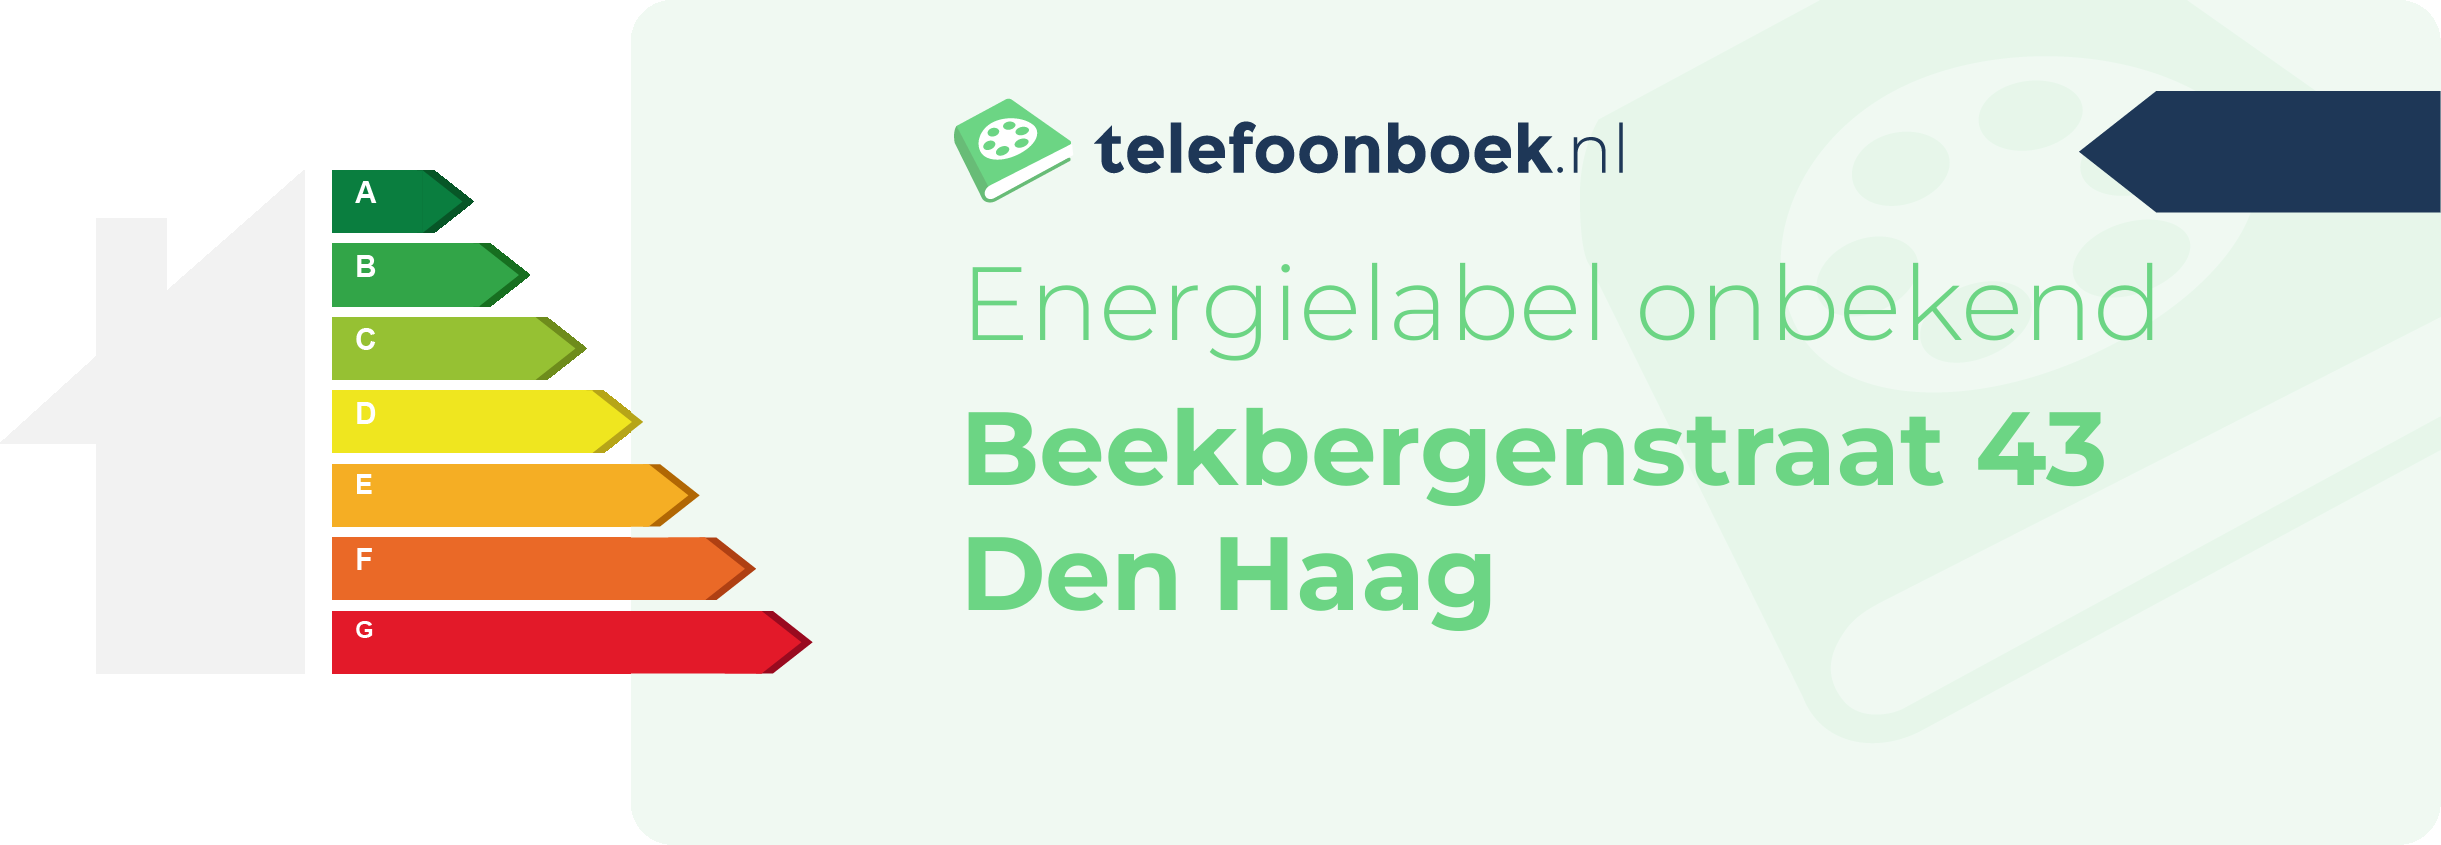 Energielabel Beekbergenstraat 43 Den Haag